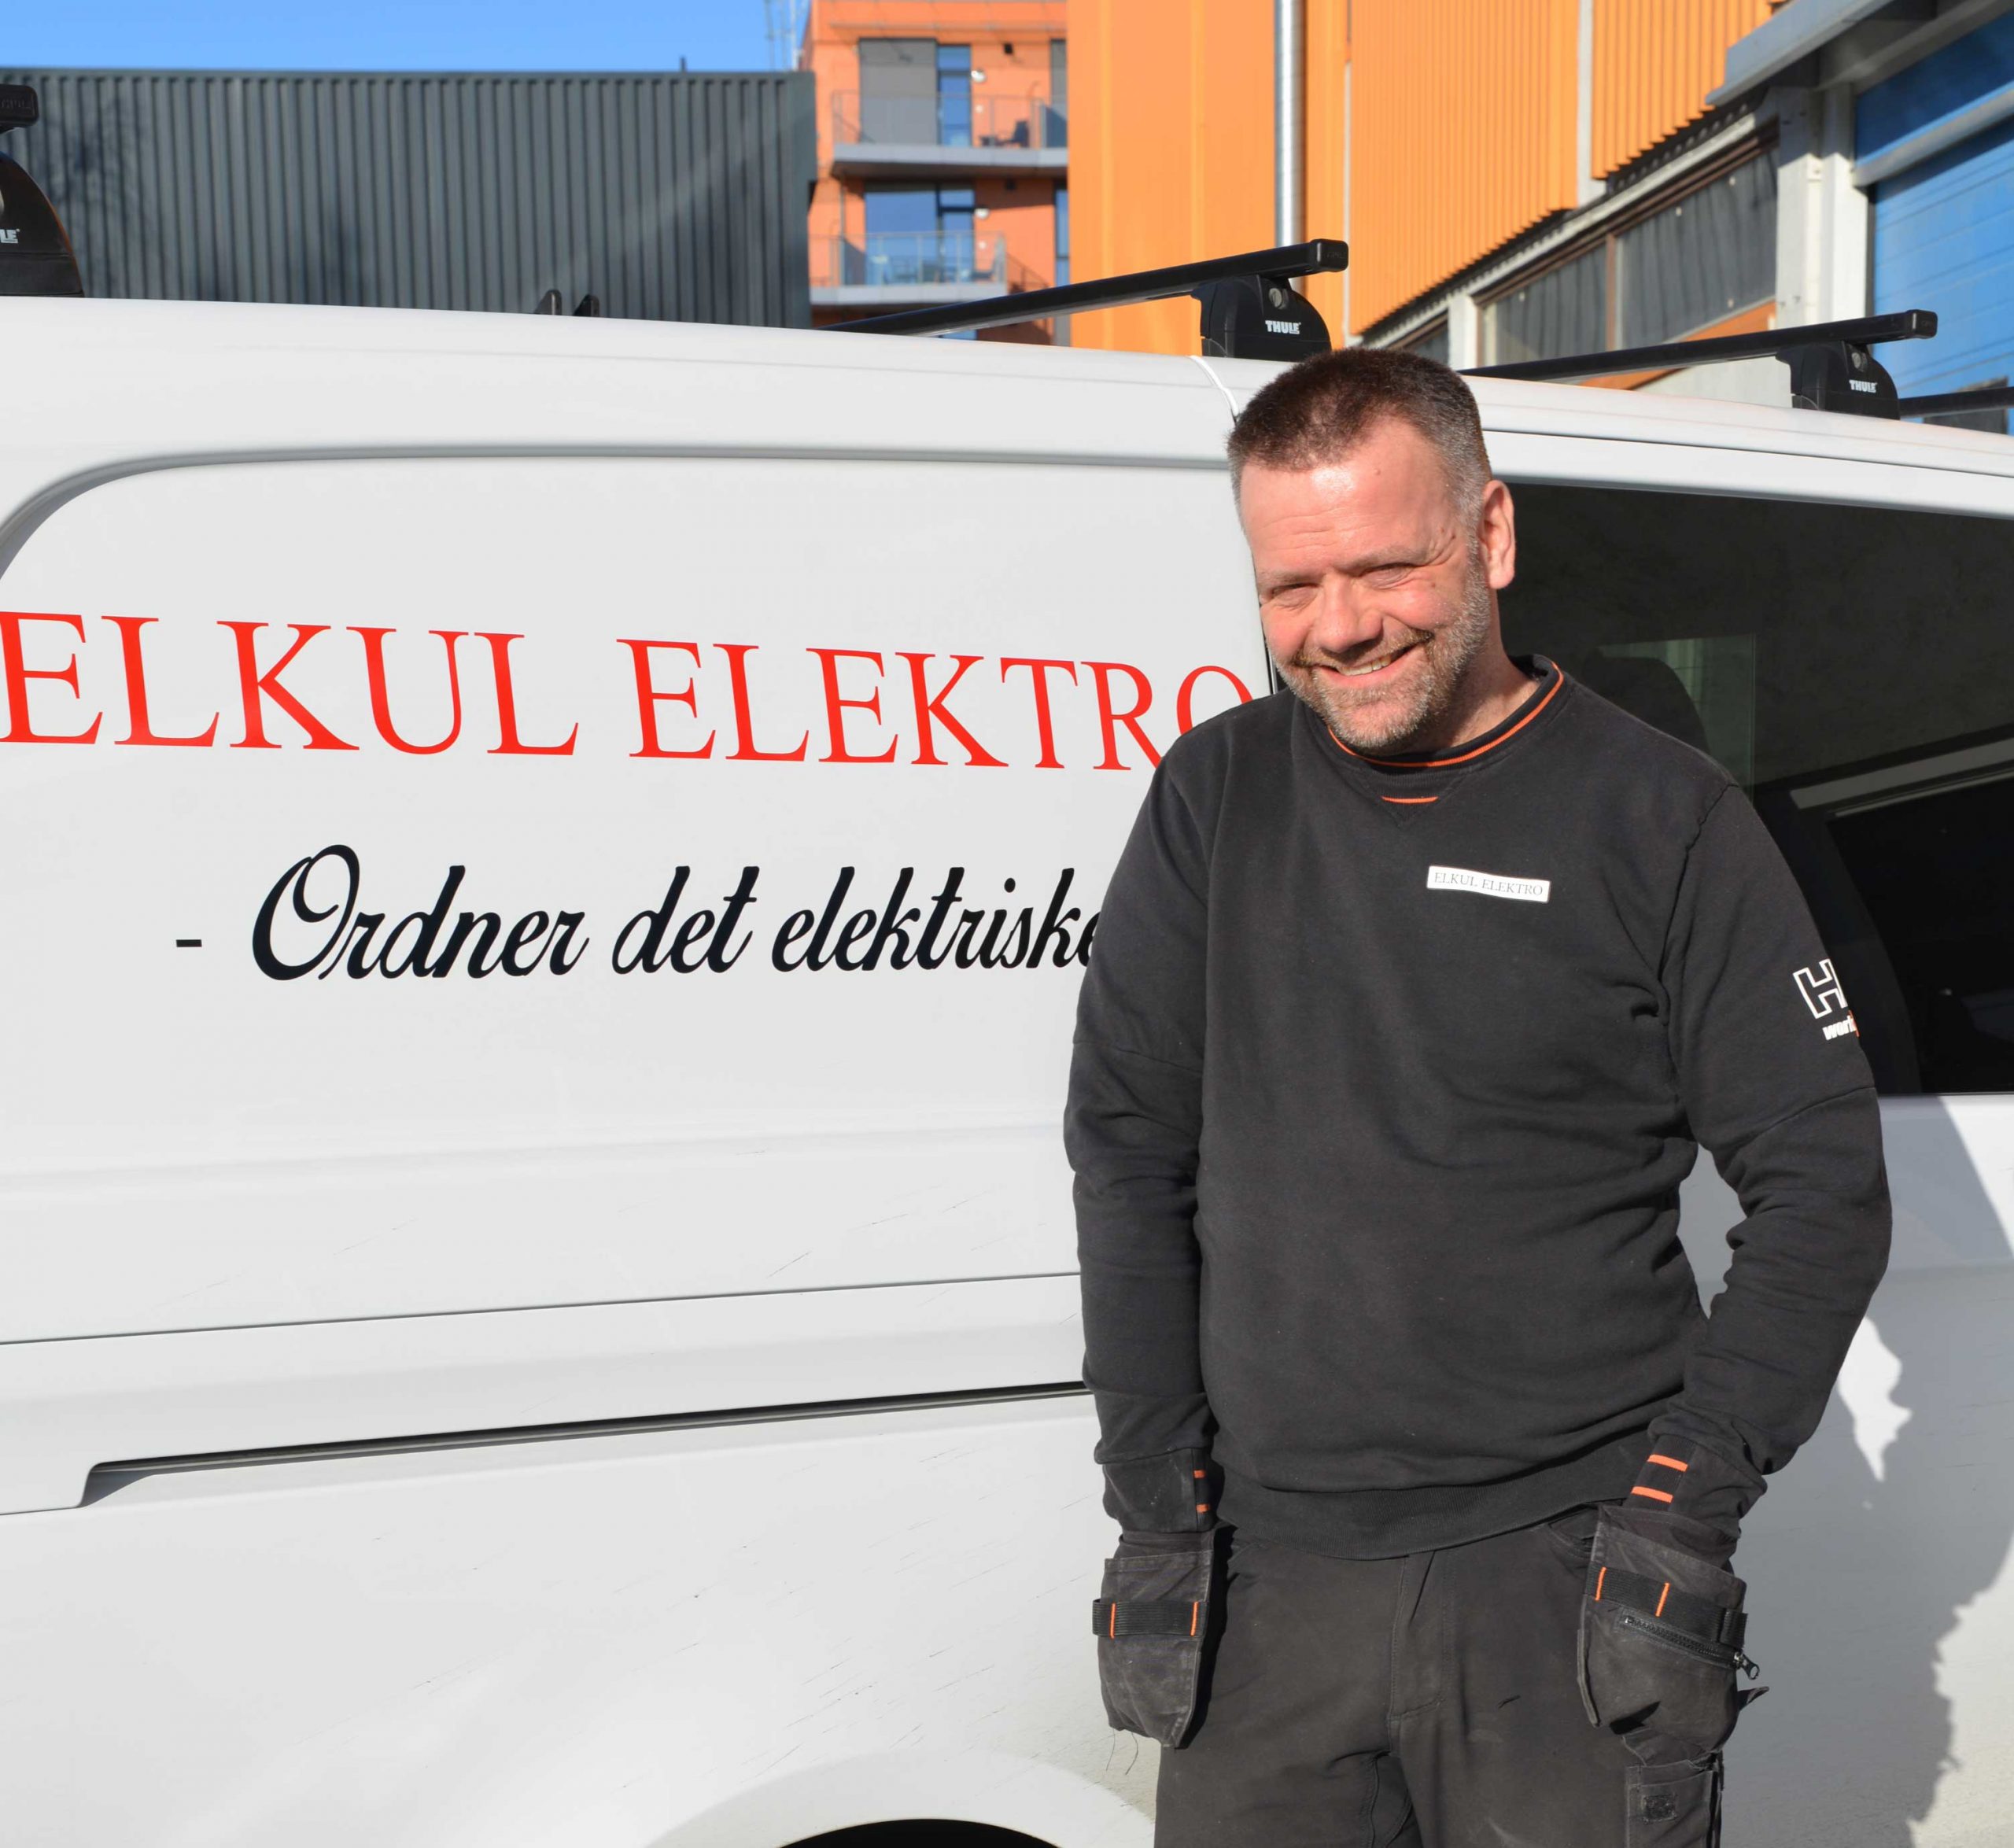 Rune Kulvik, Elkul Elektro